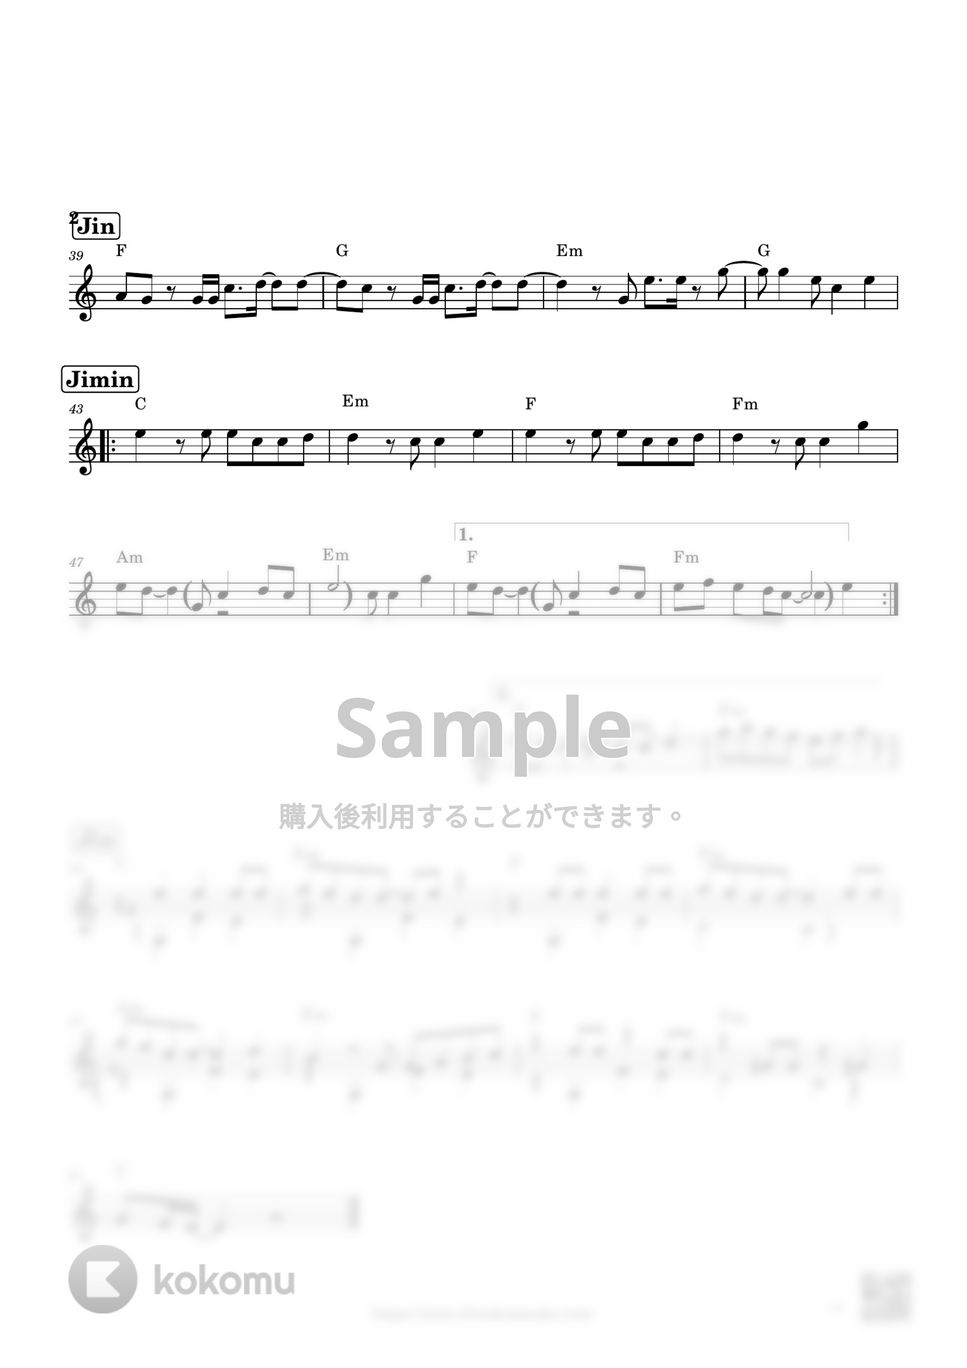 防弾少年団(BTS) - Spring day (カラオケ付/Alto sax/Key = C Major) by syzkah